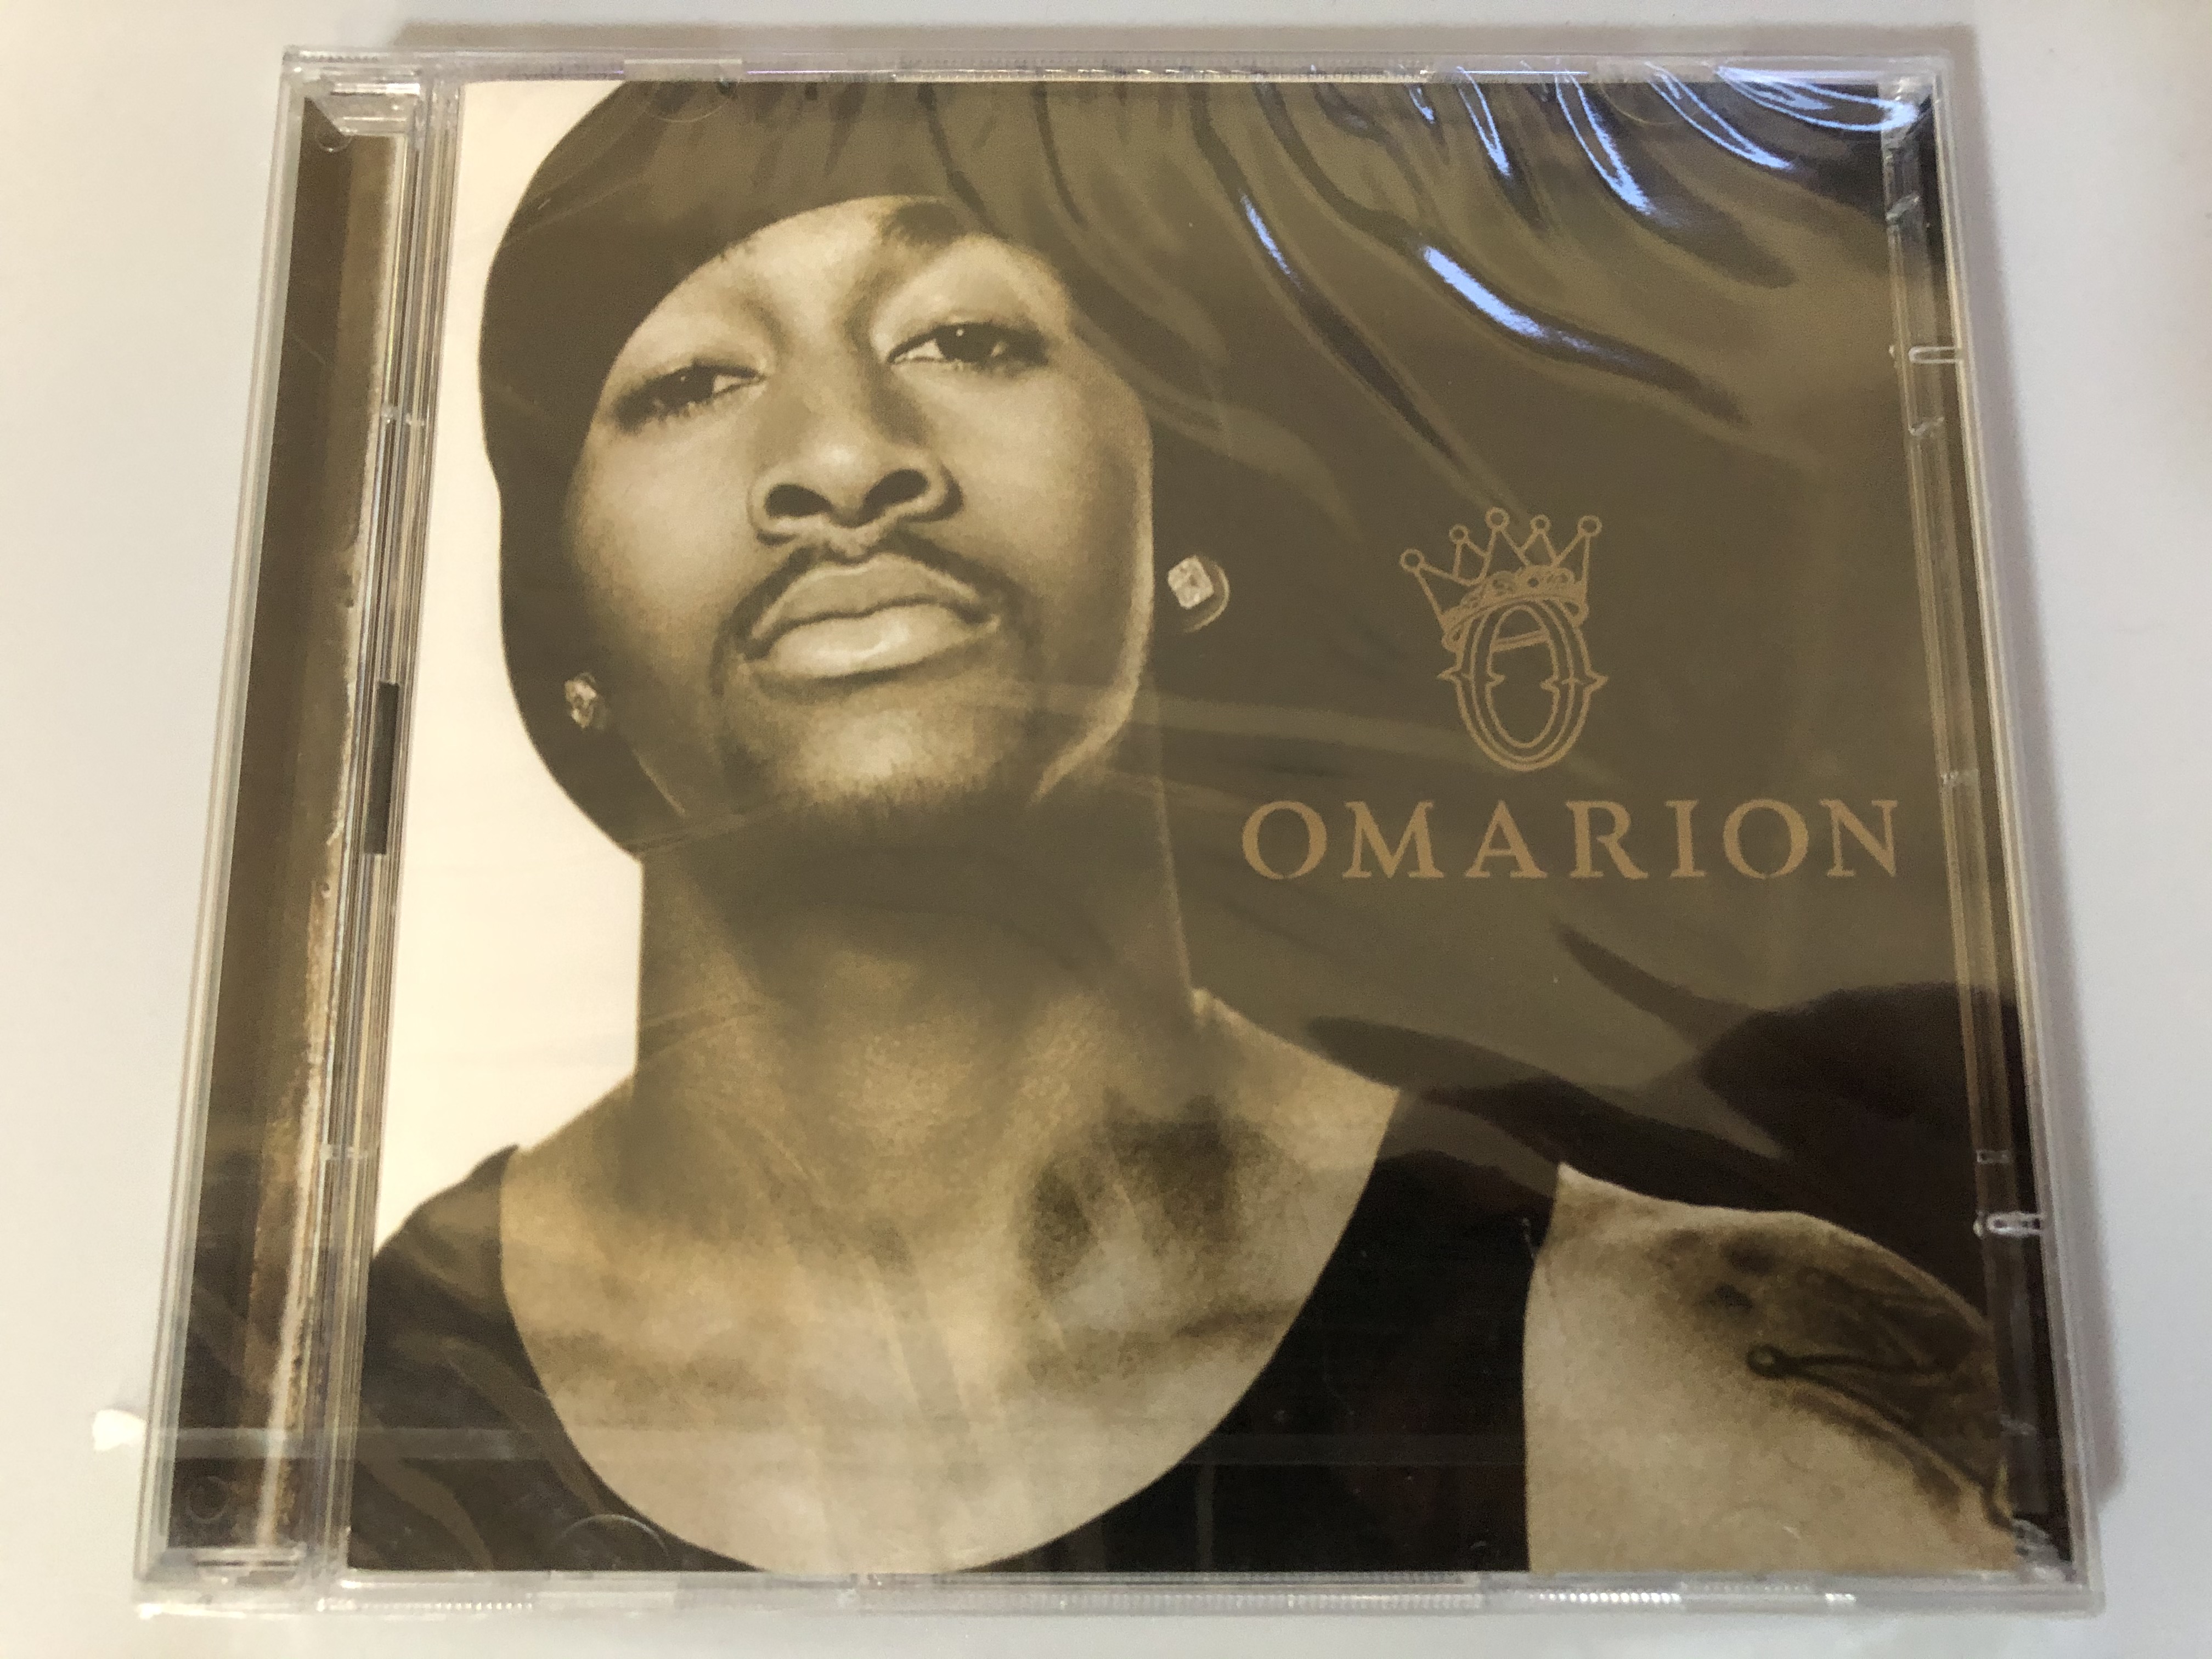 omarion-o-epic-audio-cd-dvd-cd-2005-520084-3-1-.jpg